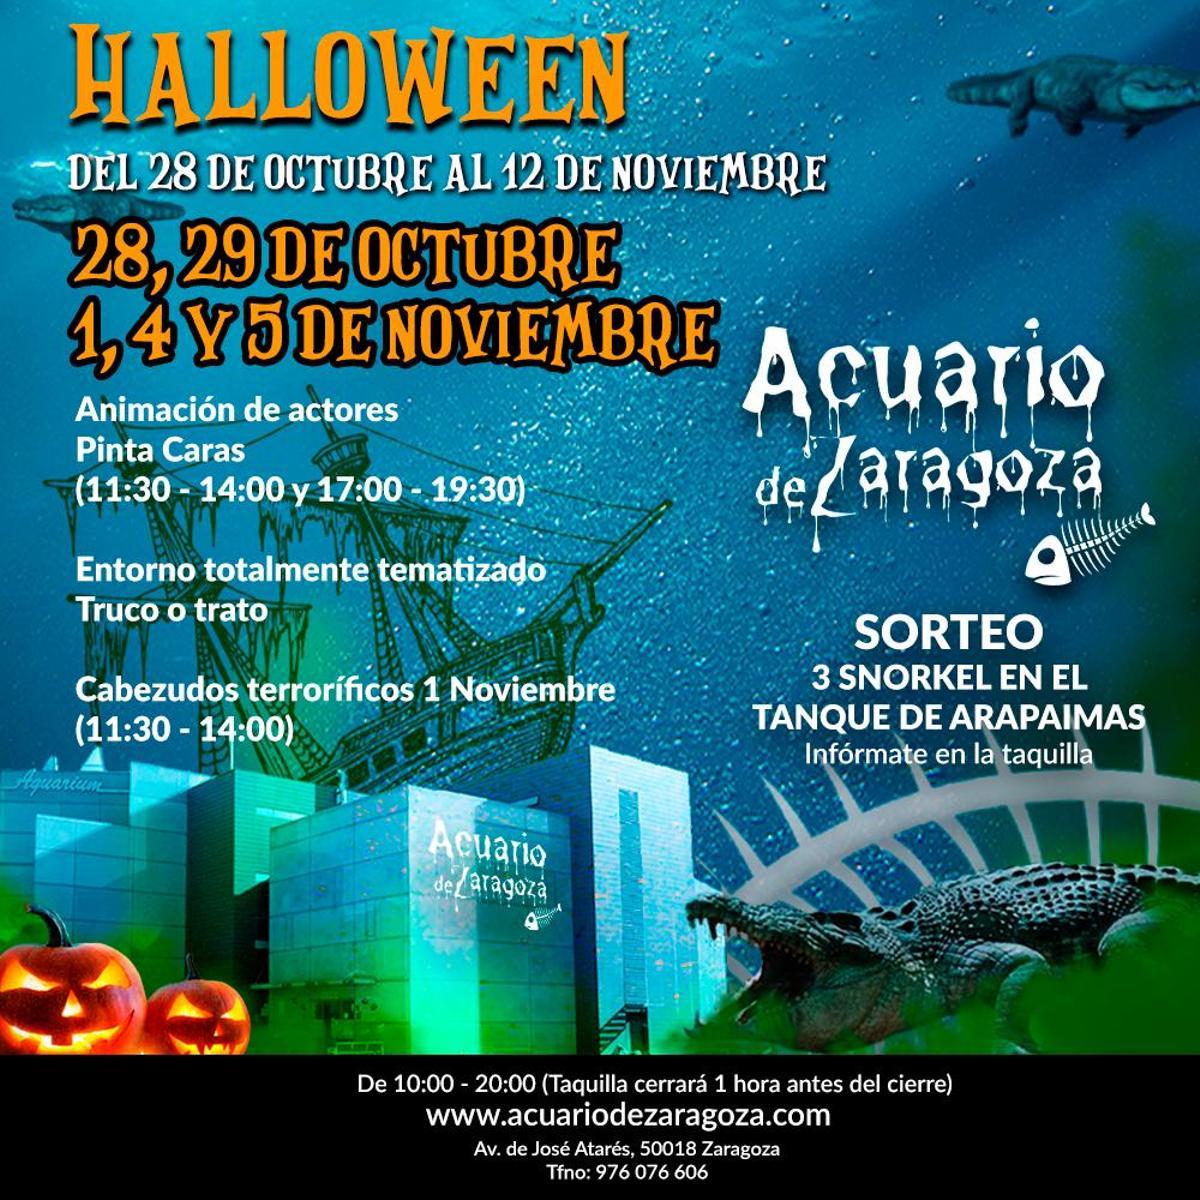 Cartel informativo de las actividades del Acuario de Zaragoza en Halloween